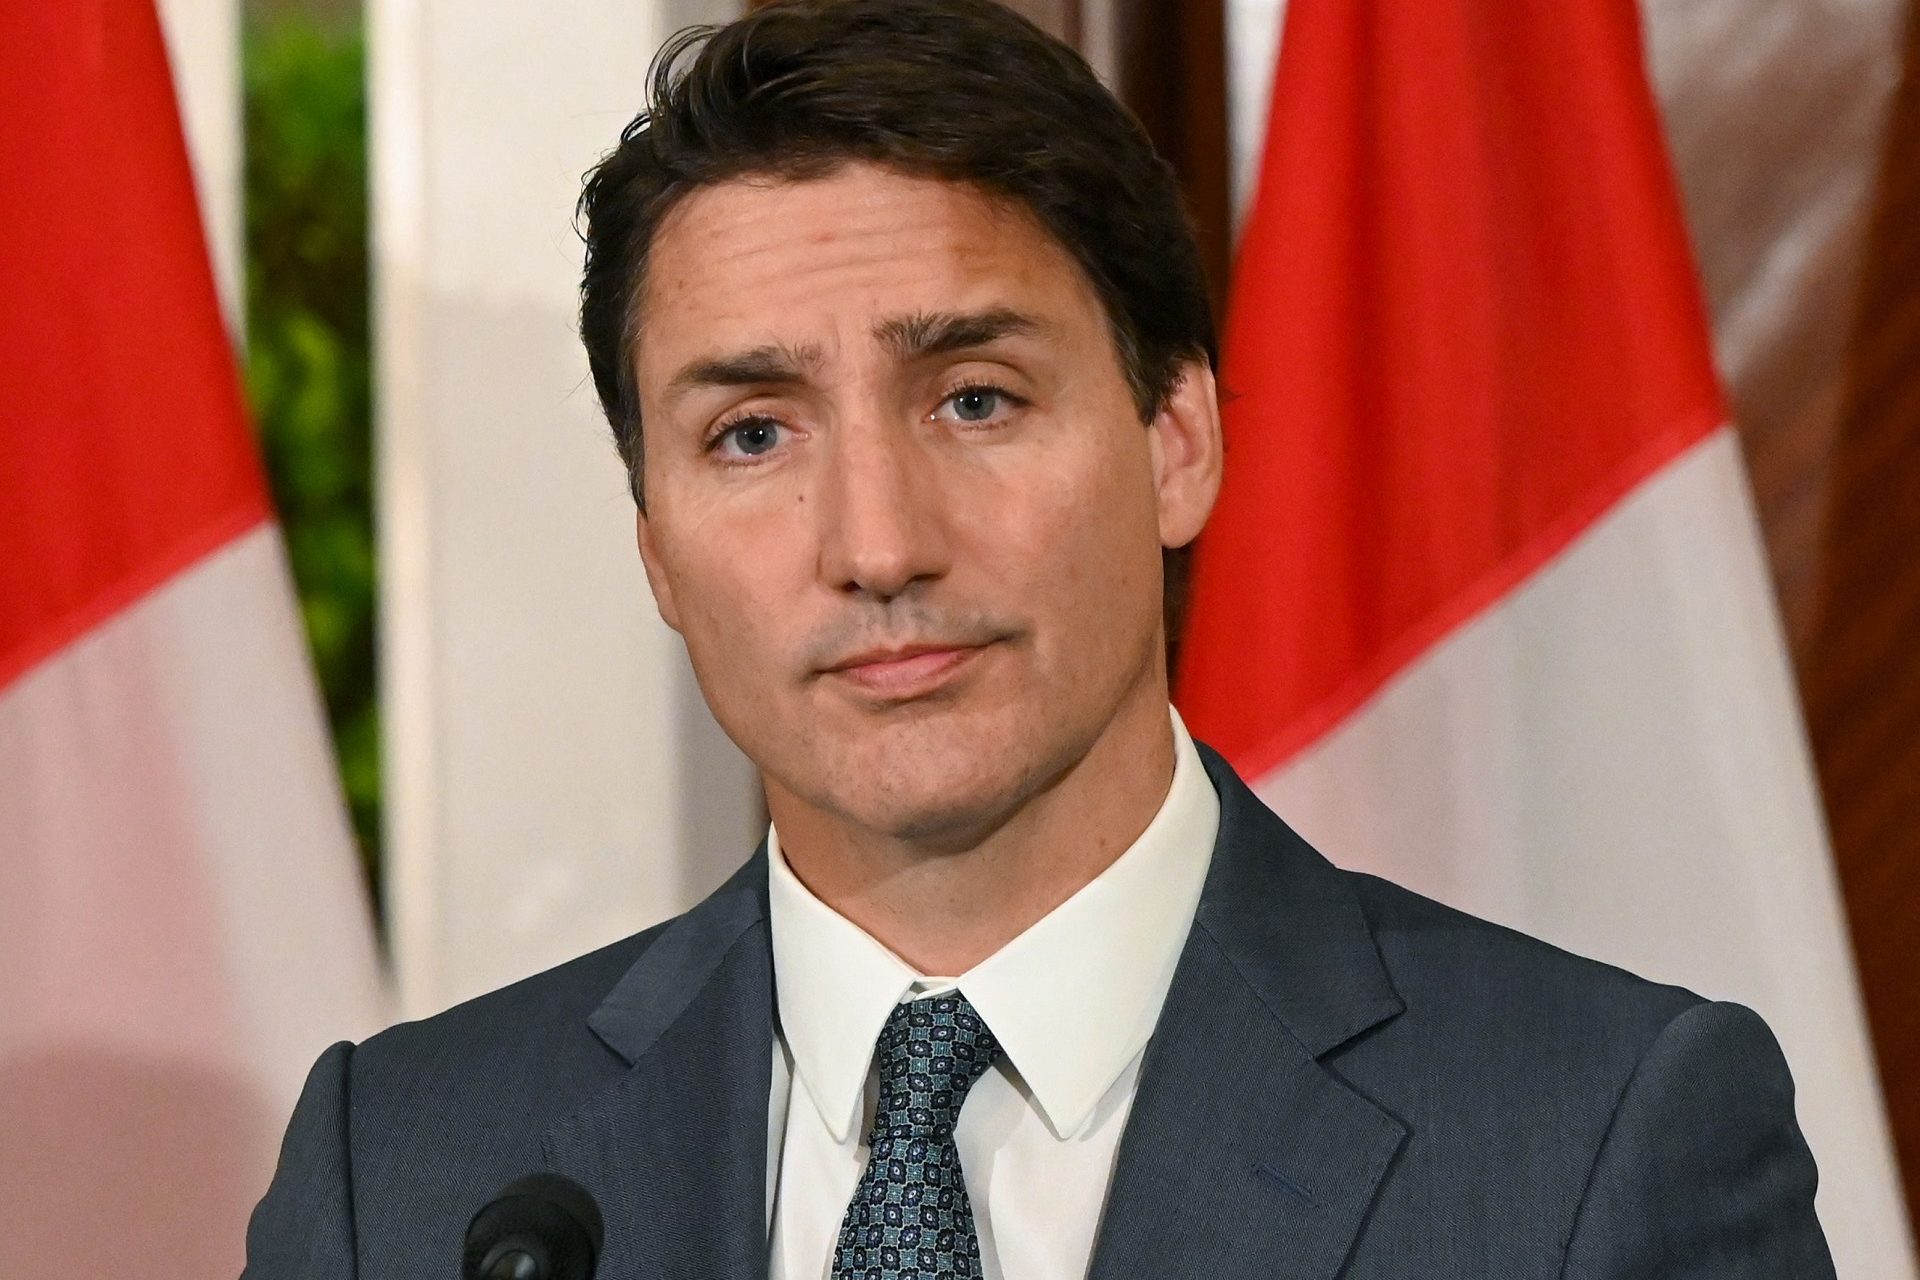 Wird Trudeau sein Amt als kanadischer Premierminister aufgeben?